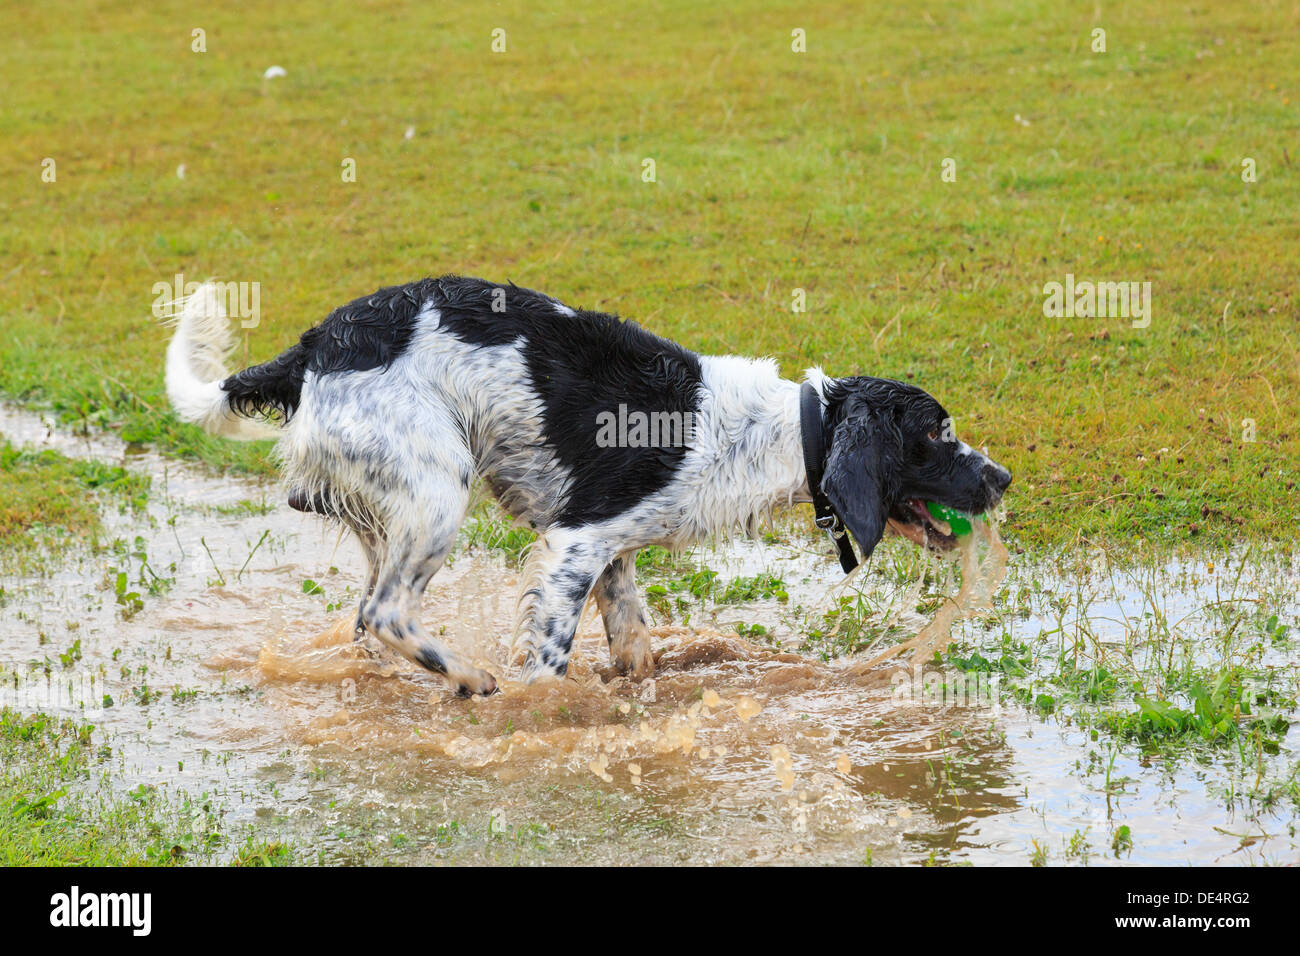 Trempé noir et blanc English Springer Spaniel chien qui court dans une flaque d'eau pour récupérer une balle. En Angleterre, Royaume-Uni, Angleterre Banque D'Images